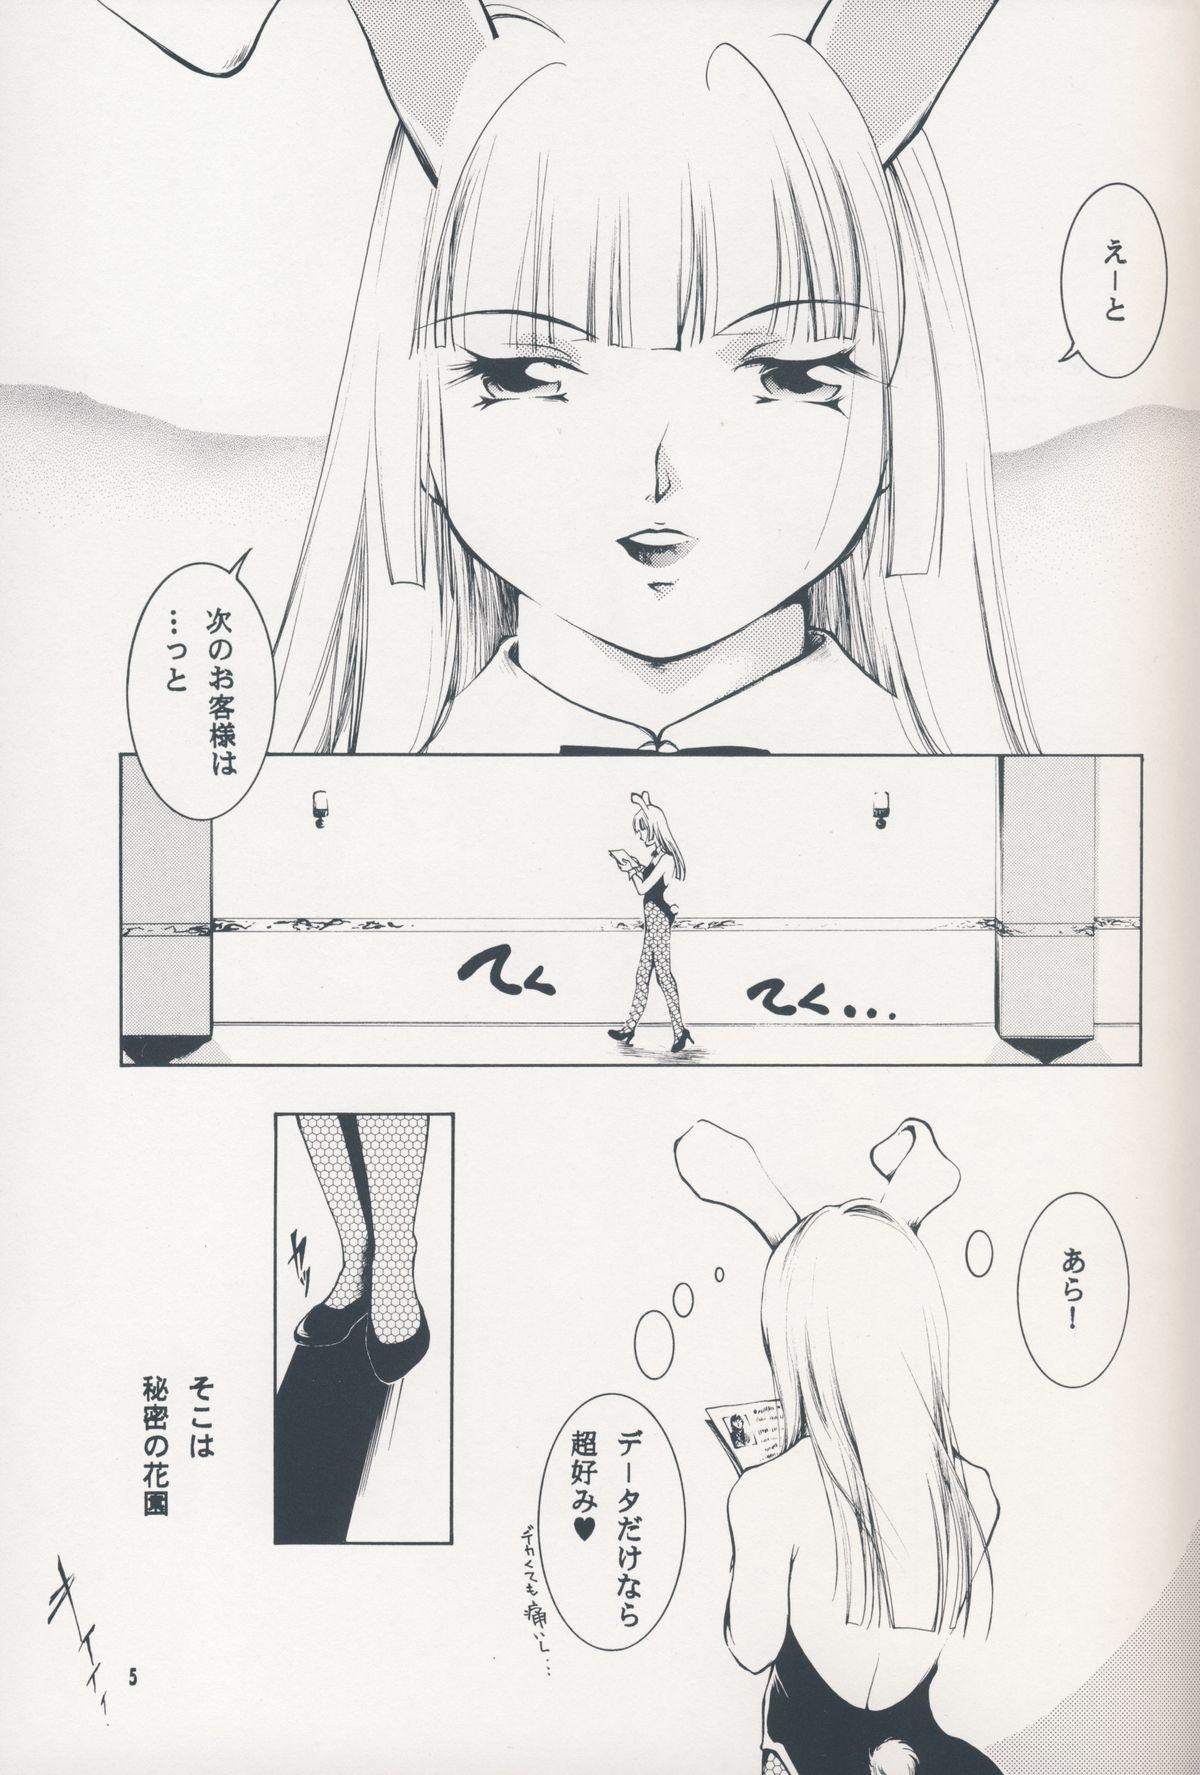 Gay Studs Hadashi no VAMPIRE 7 - Vampire princess miyu Three Some - Page 4